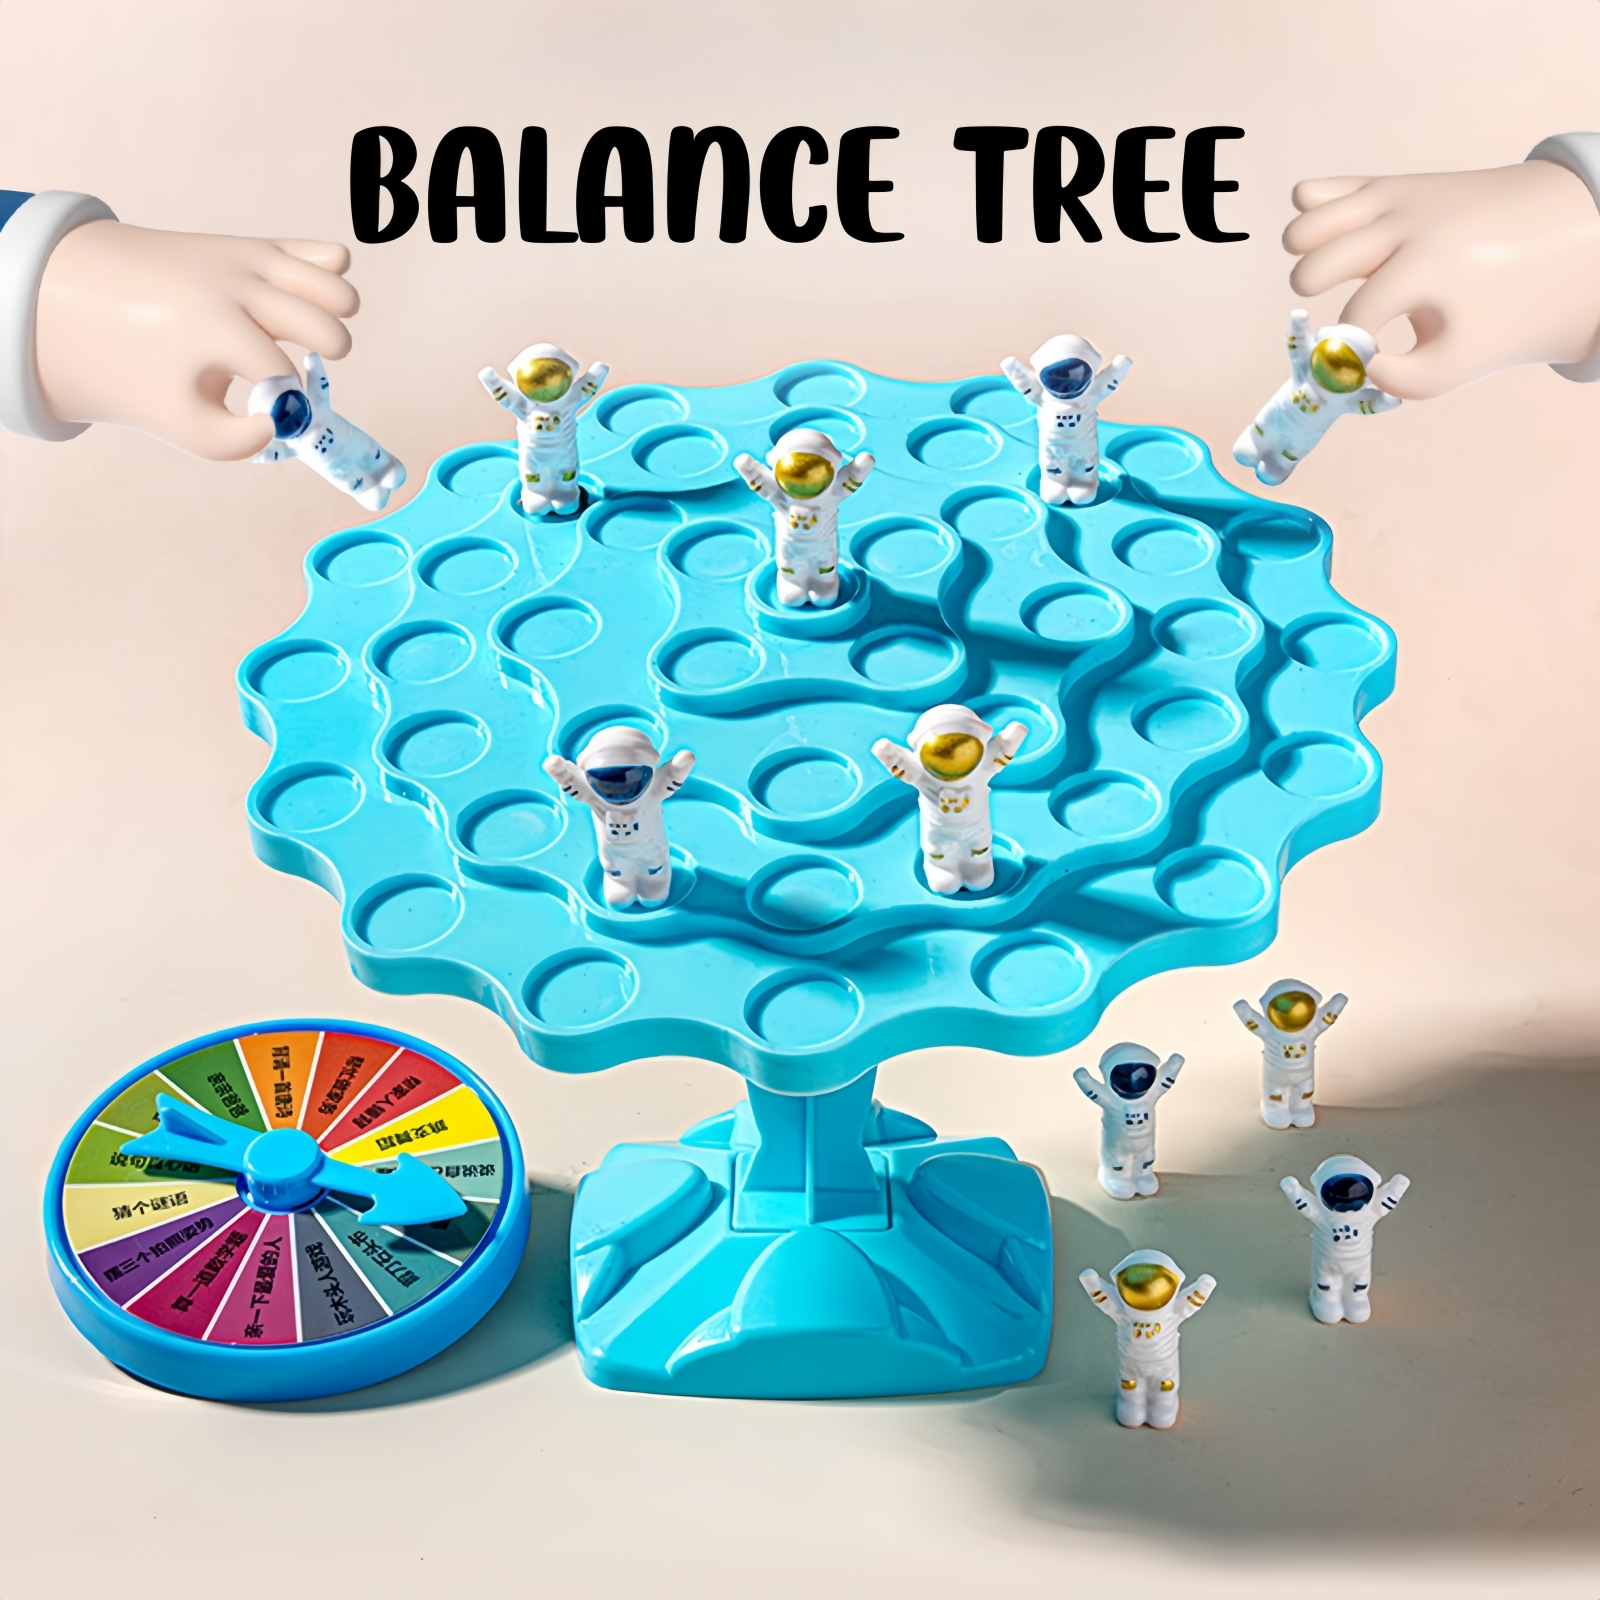 เกมแบบดั้งเดิม นักบินอวกาศสมดุลต้นไม้ เกมครอบครัว เกมบนโต๊ะ ของเล่นเด็ก เกมการแข่งขัน ของขวัญ นักบินอวกาศแสนสนุก Balance Tree Toy